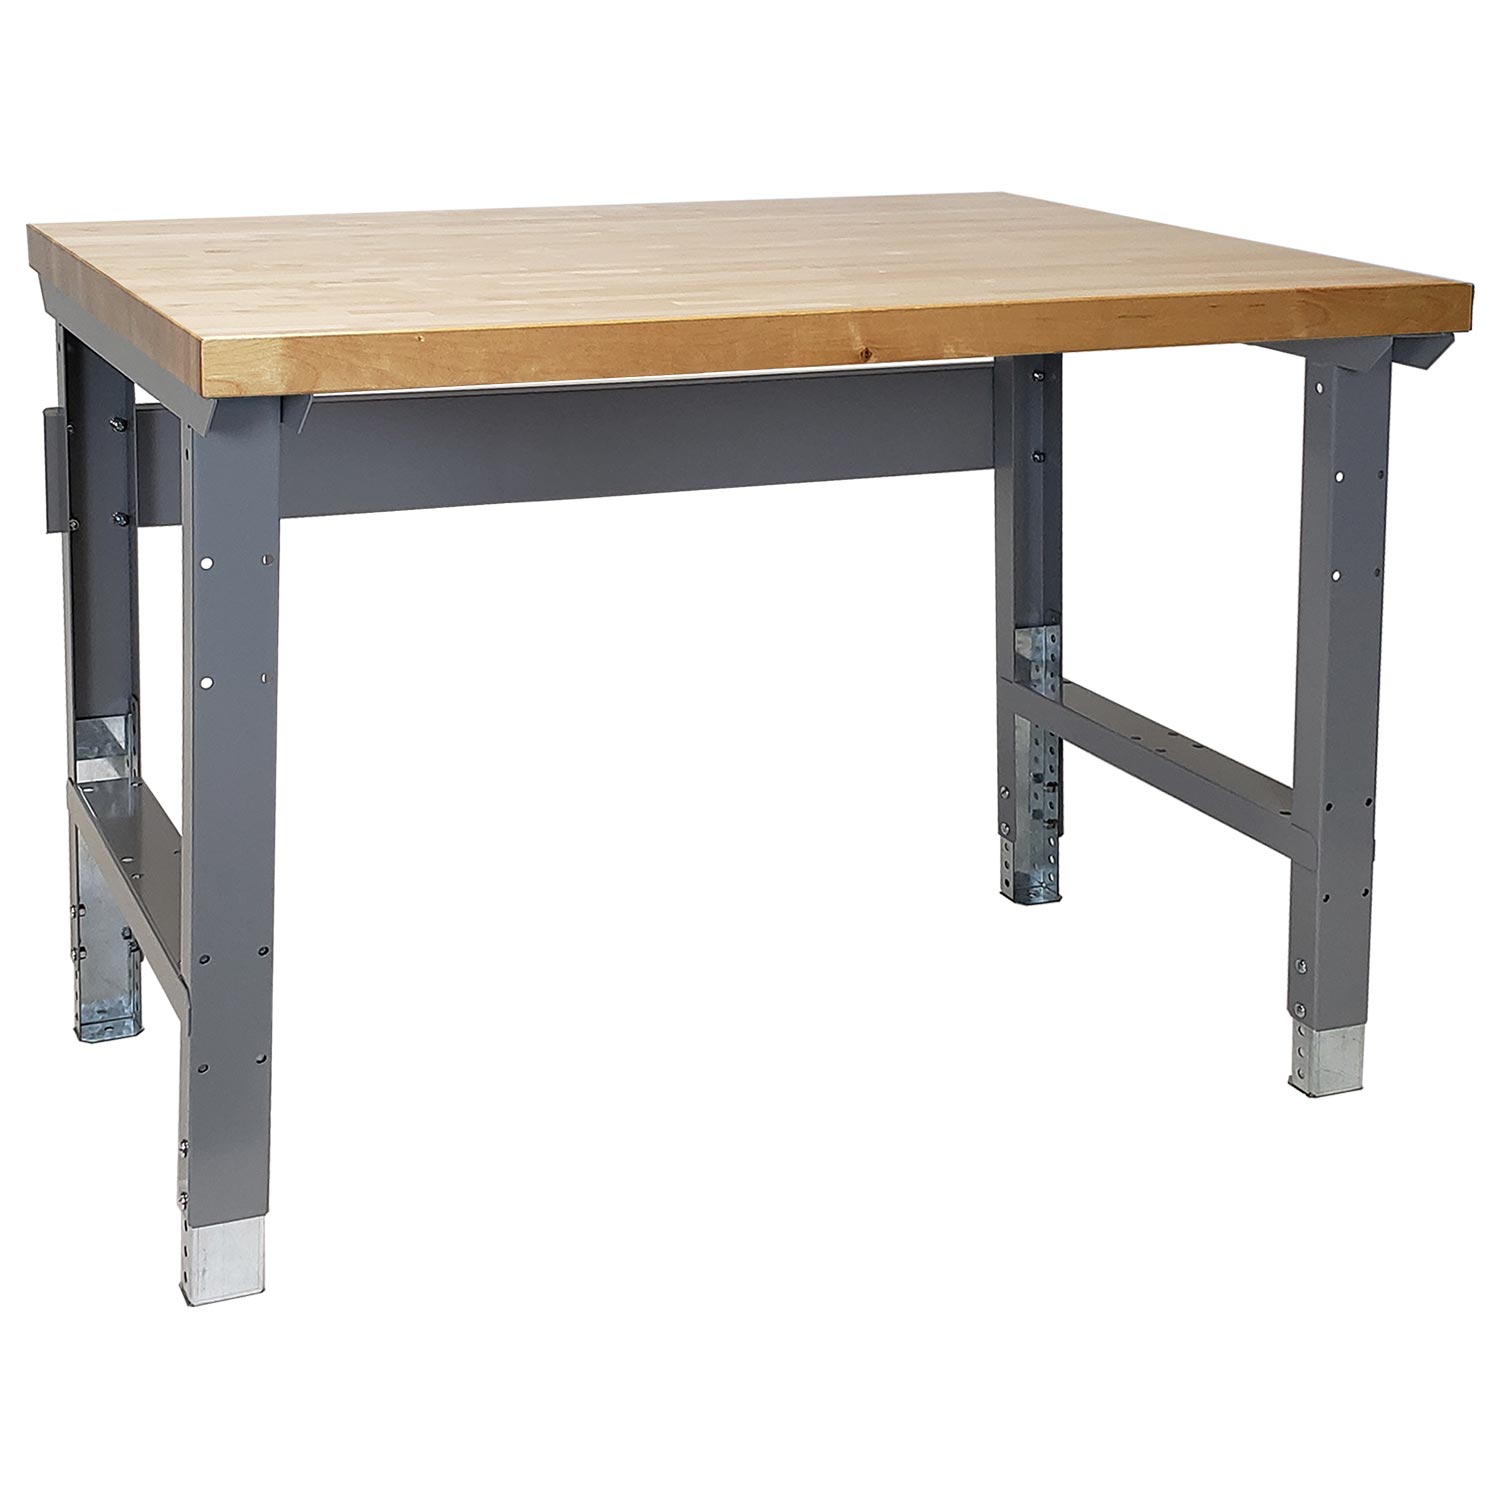 Lyon Workbench with Adjustable Legs Hardwood Top